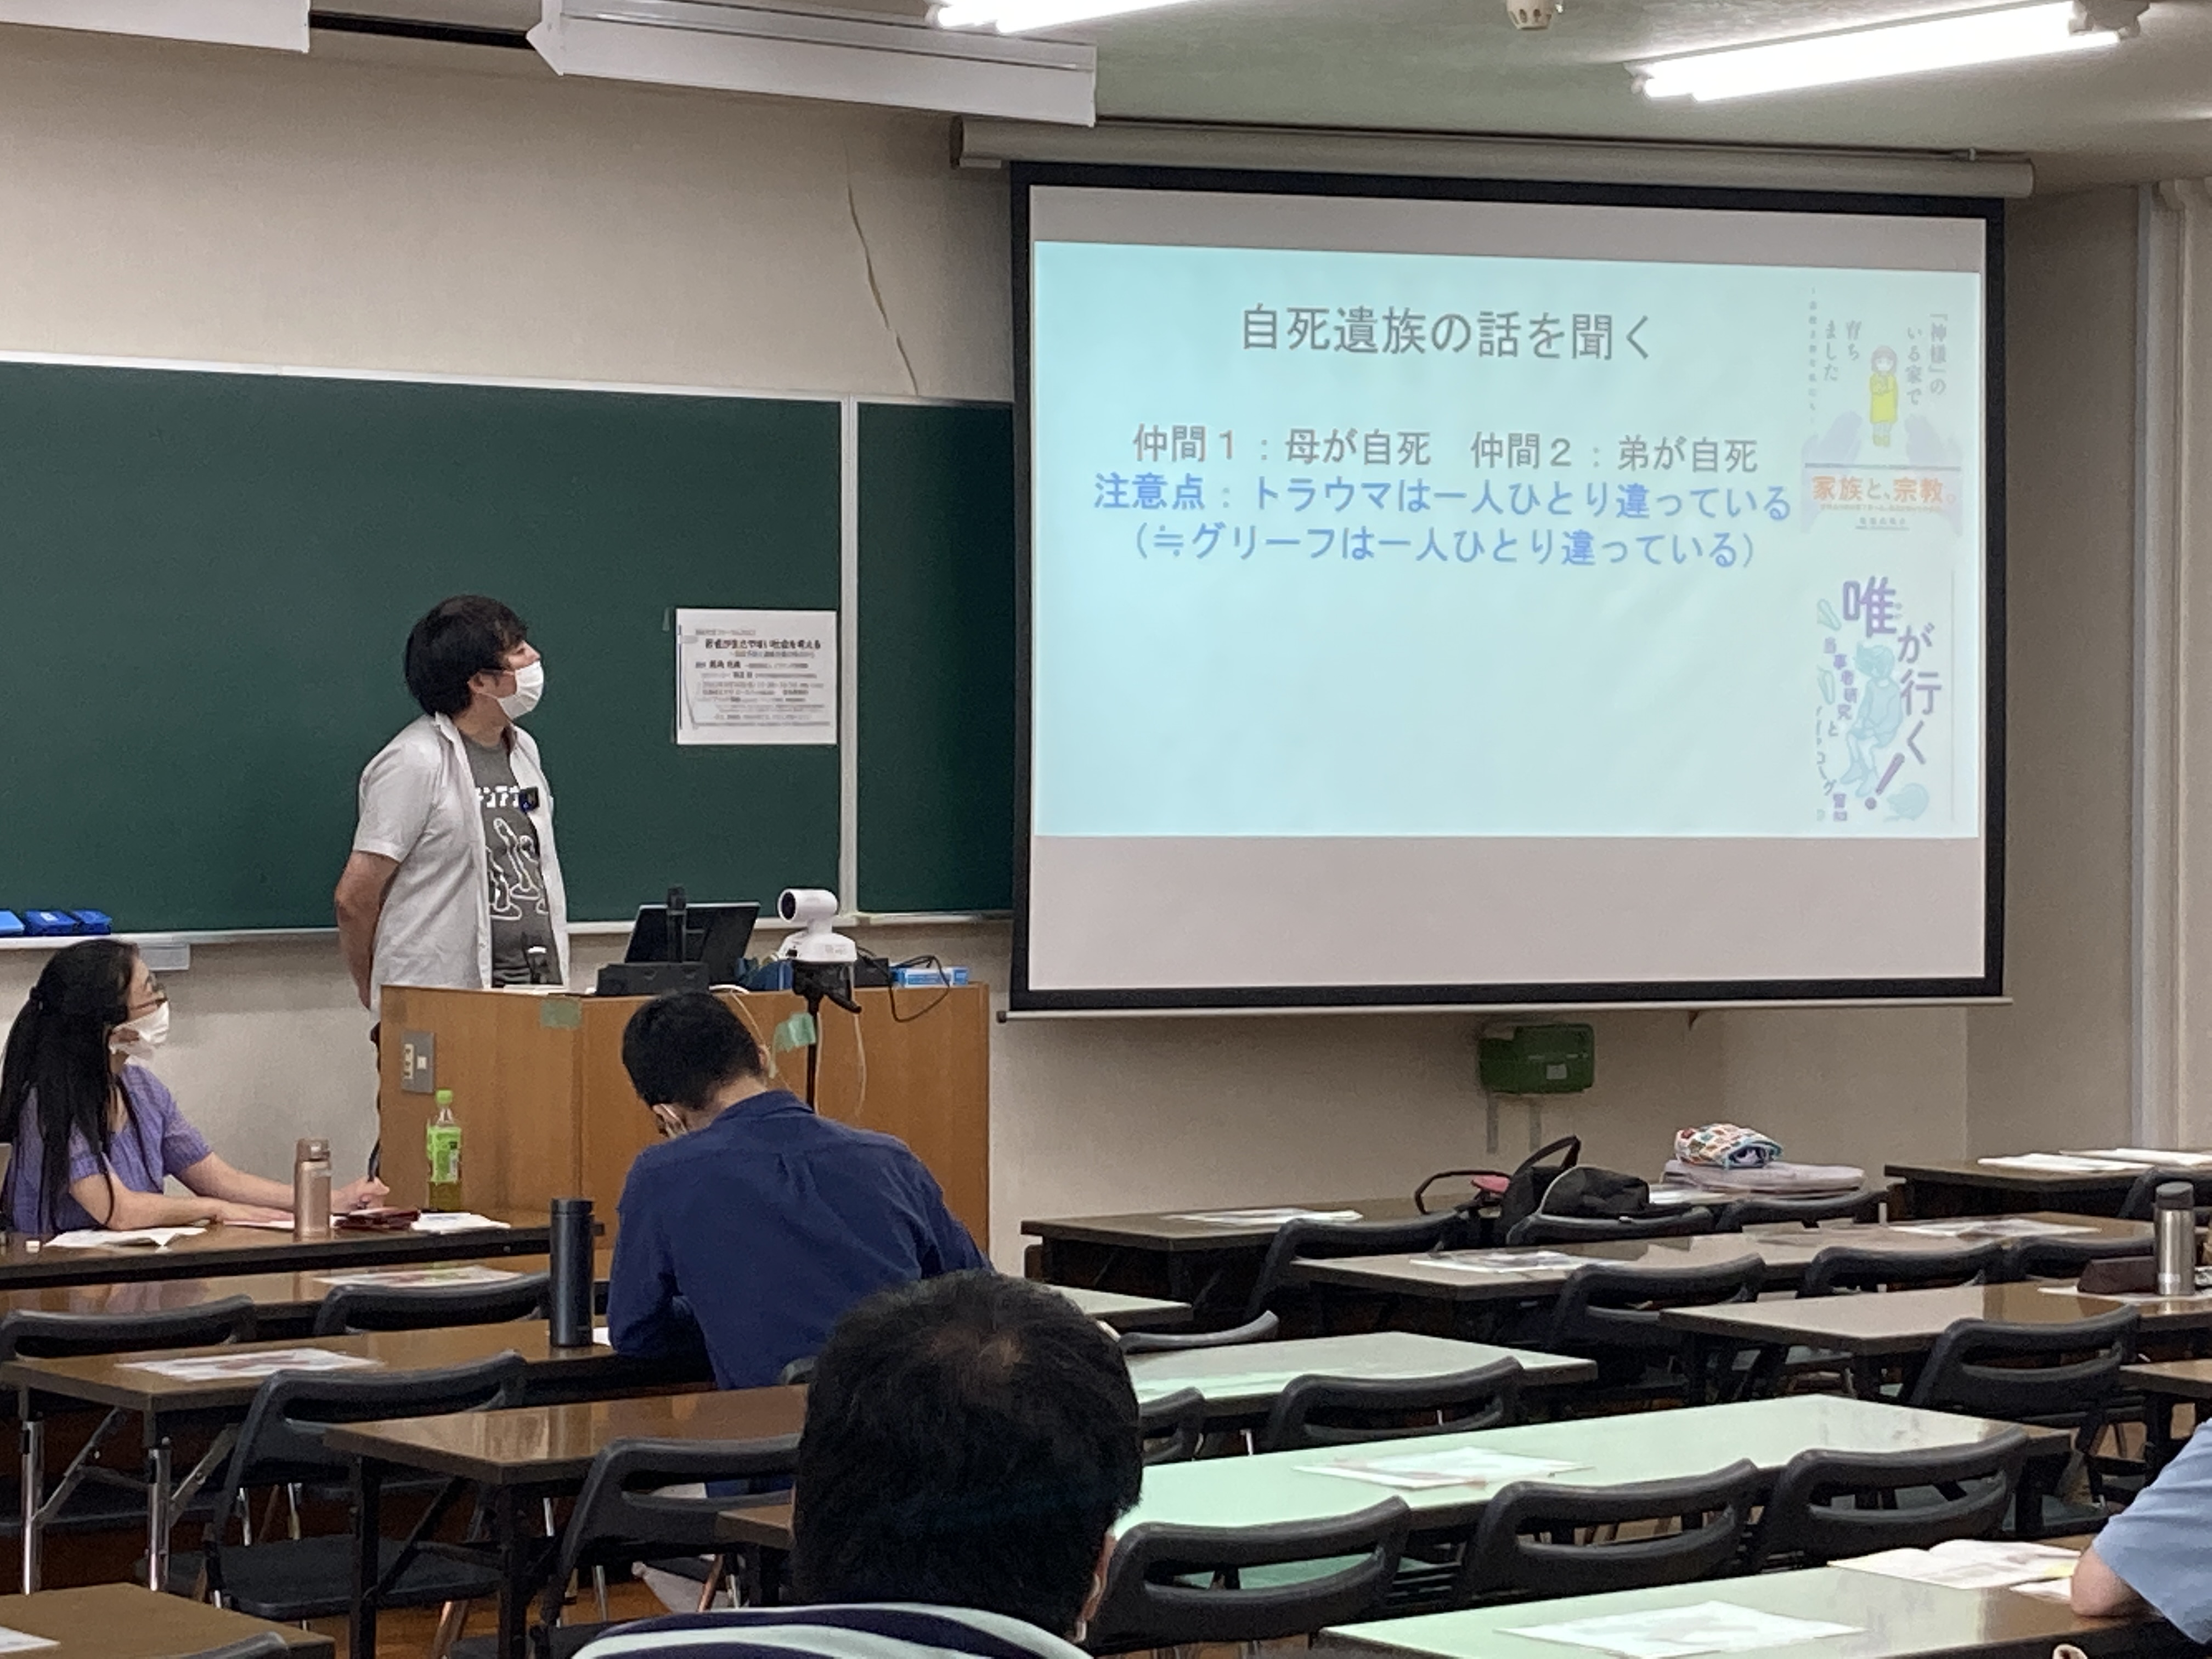 横道誠先生から、若者支援に関する実践活動と研究についてコメントをいただきました。